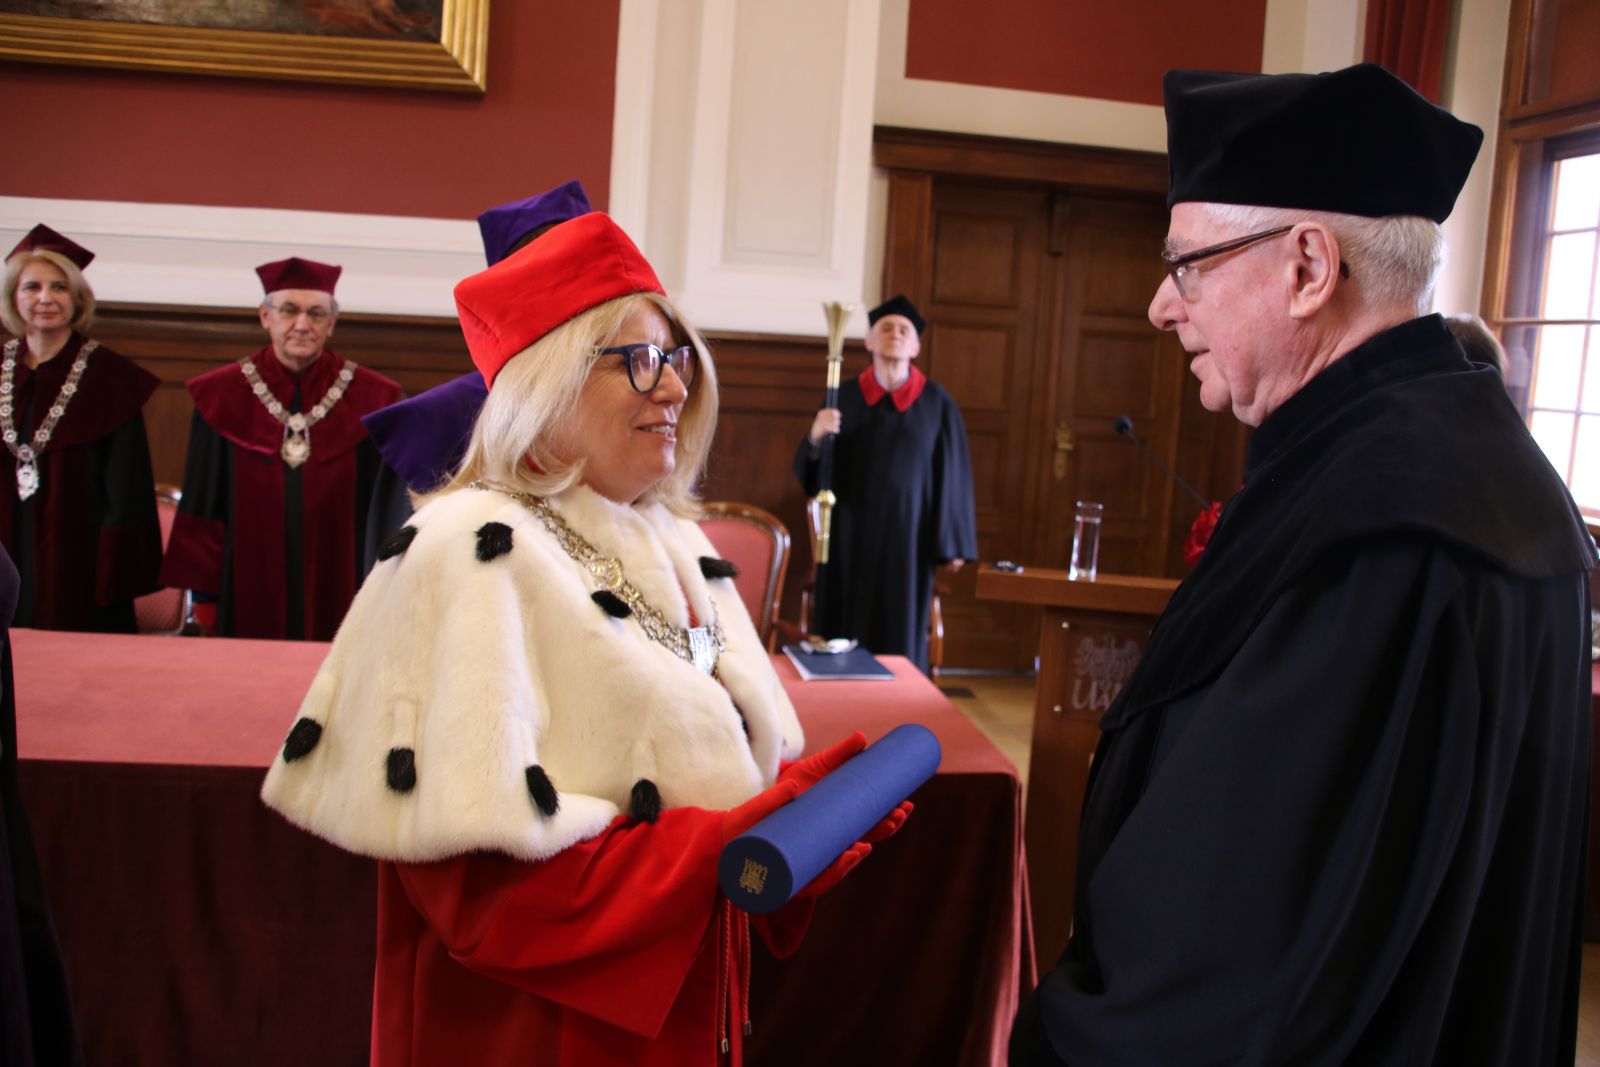 Rektor UAM wręcza dyplom doktorski prof. Danielewiczowi. Jest ubrana w czerwoną togę, czerwony biret i płaszcz z gronostajów.